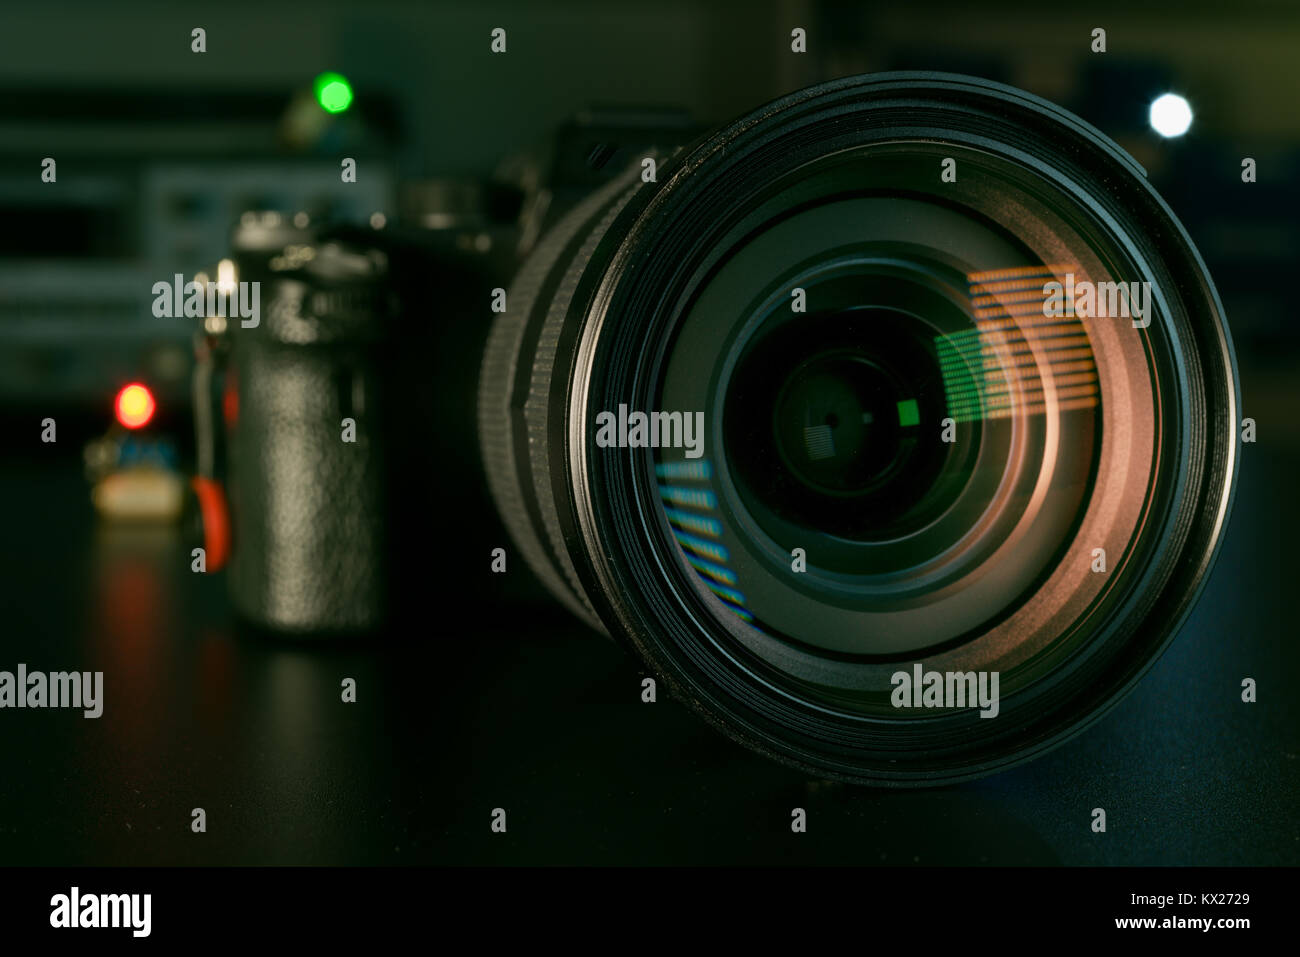 Fotocamera o obiettivo video di close-up su sfondo nero obiettivo reflex digitale Foto Stock